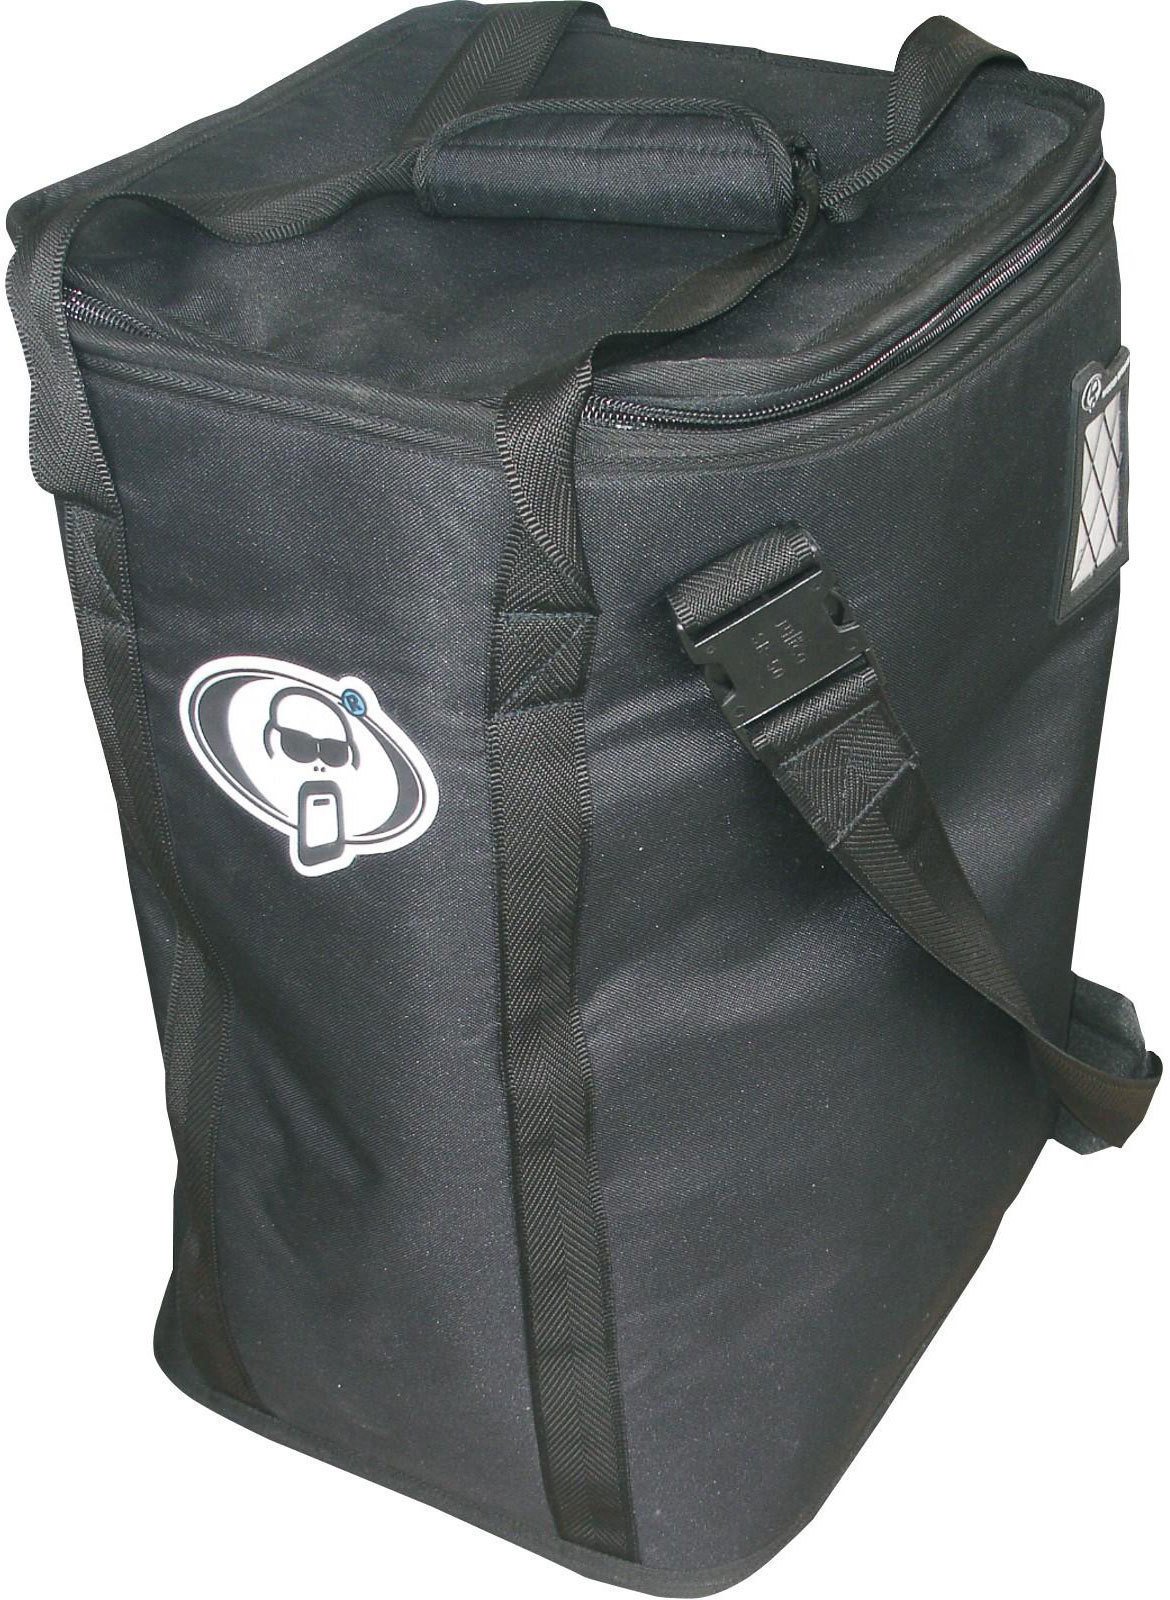 Cajon bag Protection Racket 9124-00 Cajon bag